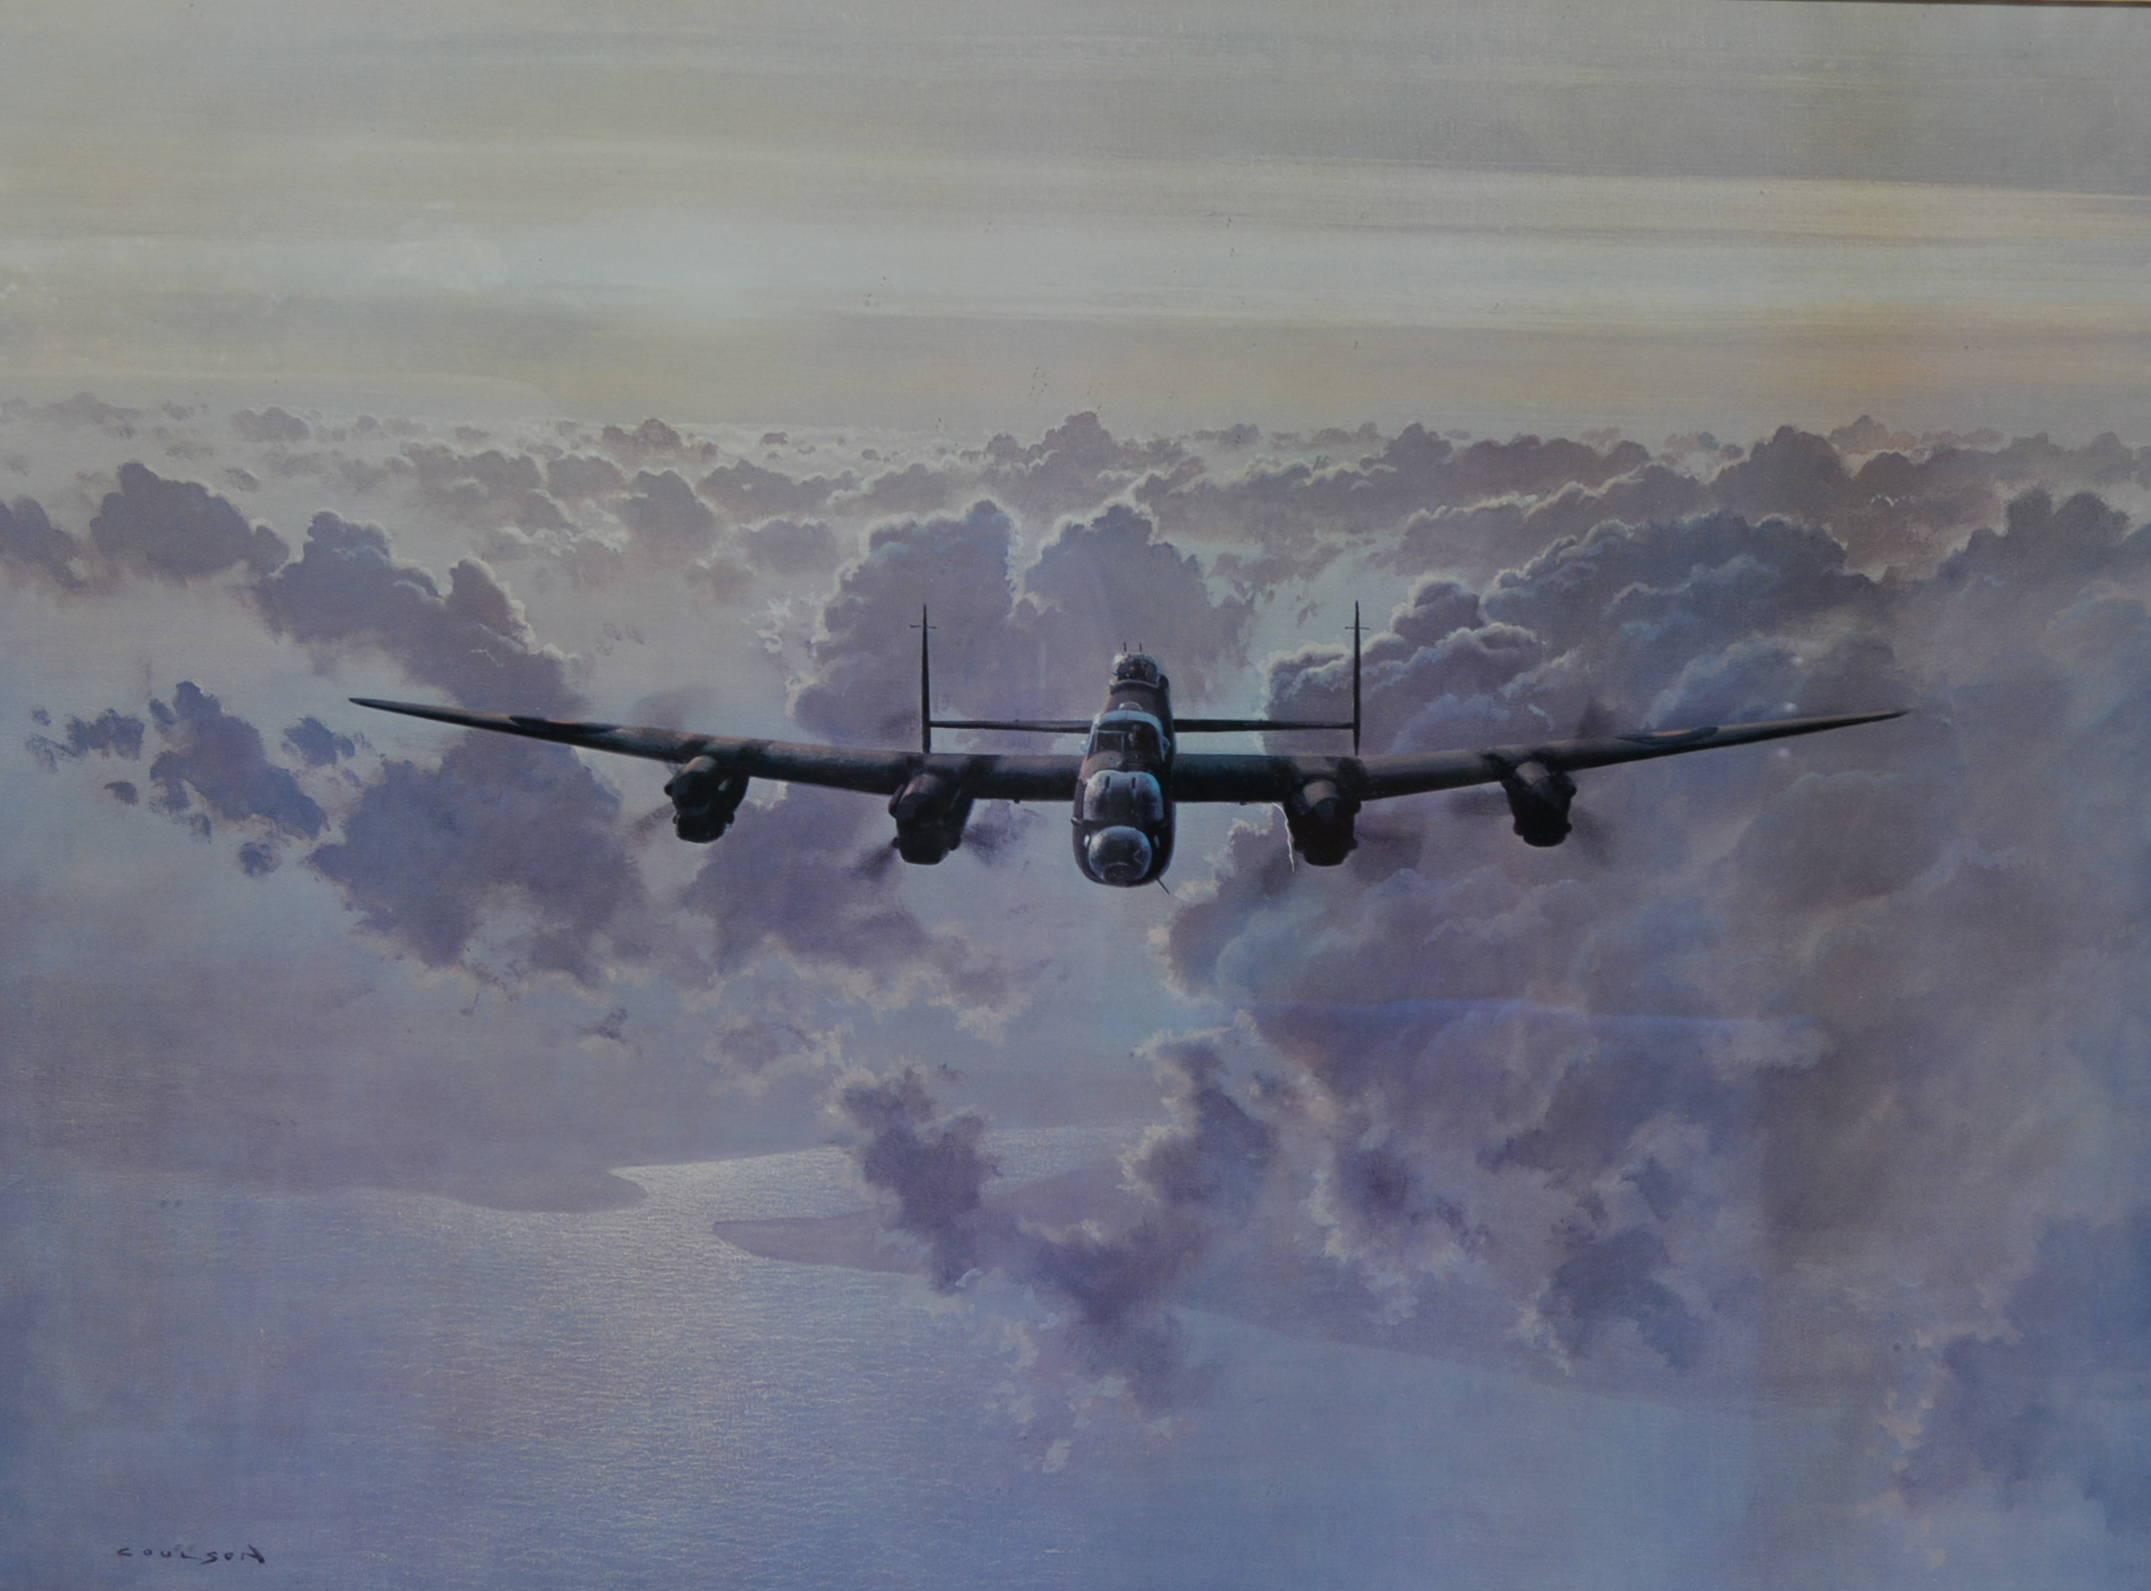 After Gerald Coulson, Lancaster Bomber, colour print, 56cm x 74cm.